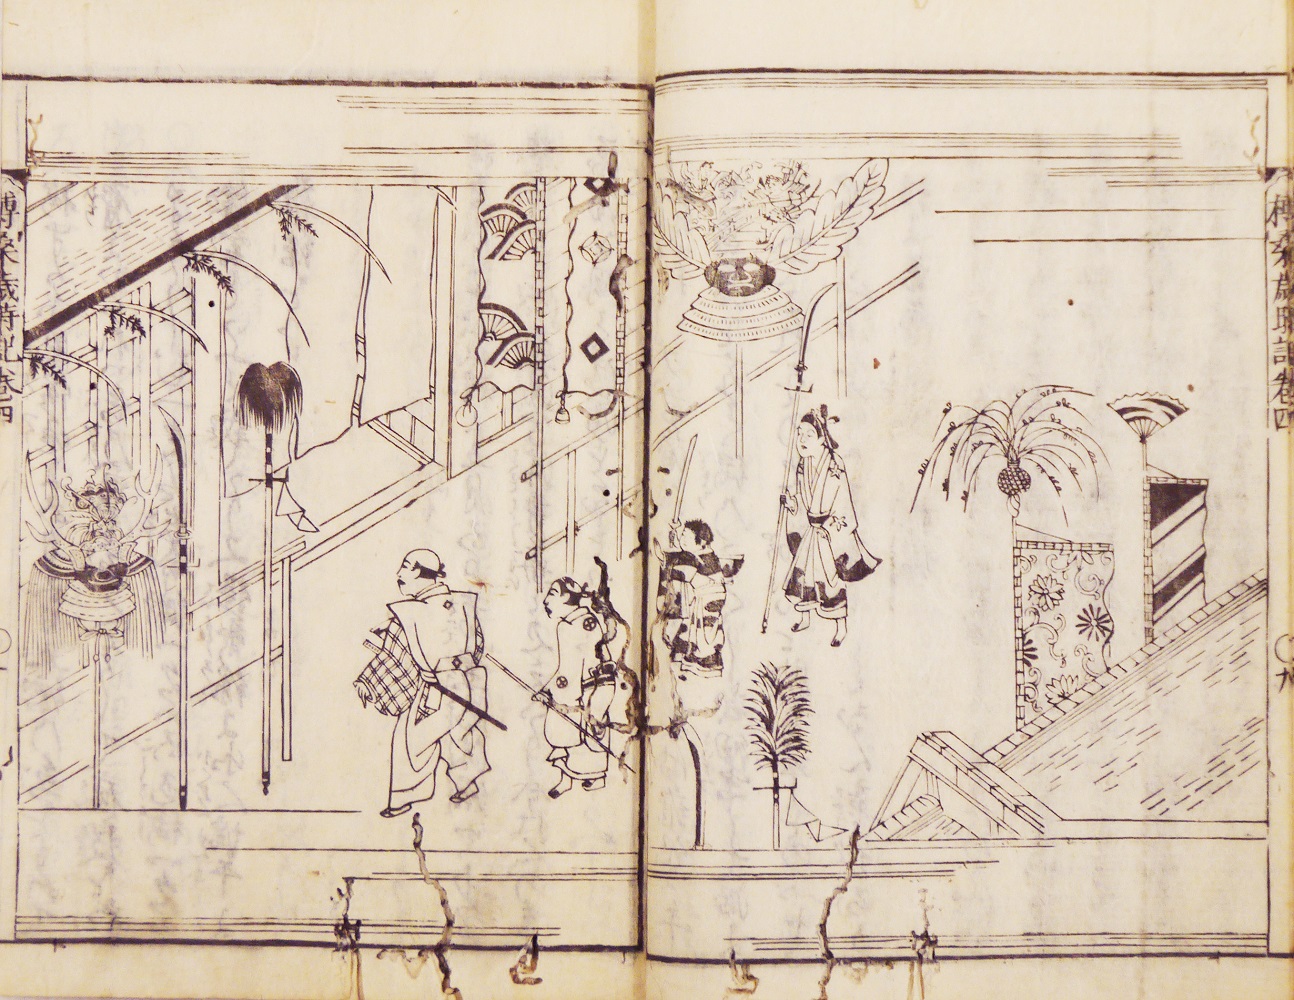 『日本歳時記』巻４より「端午飾図」（1688 年）